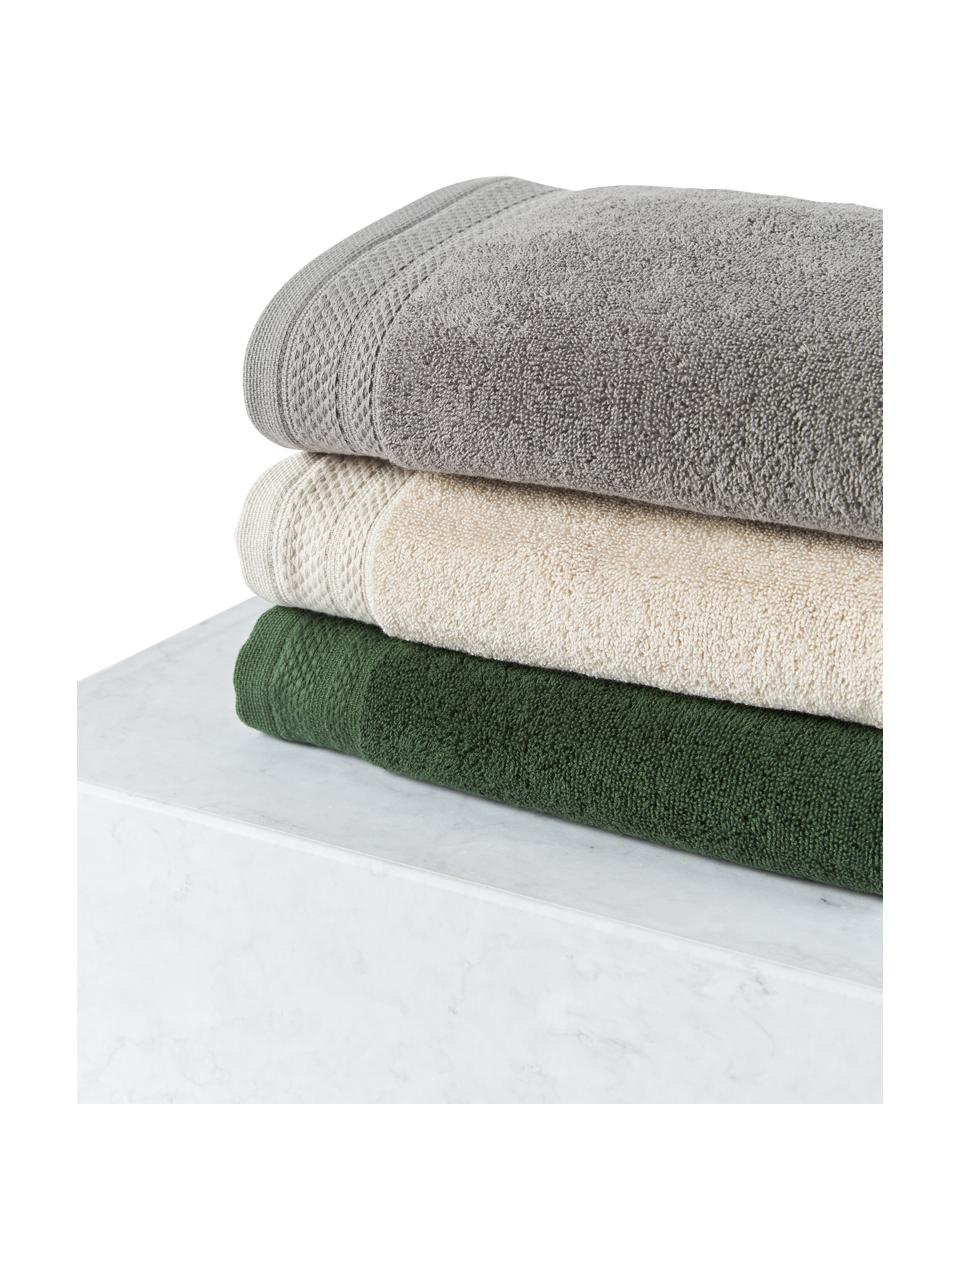 Komplet ręczników z bawełny organicznej Premium, 4 elem., Ciemny szary, Komplet z różnymi rozmiarami